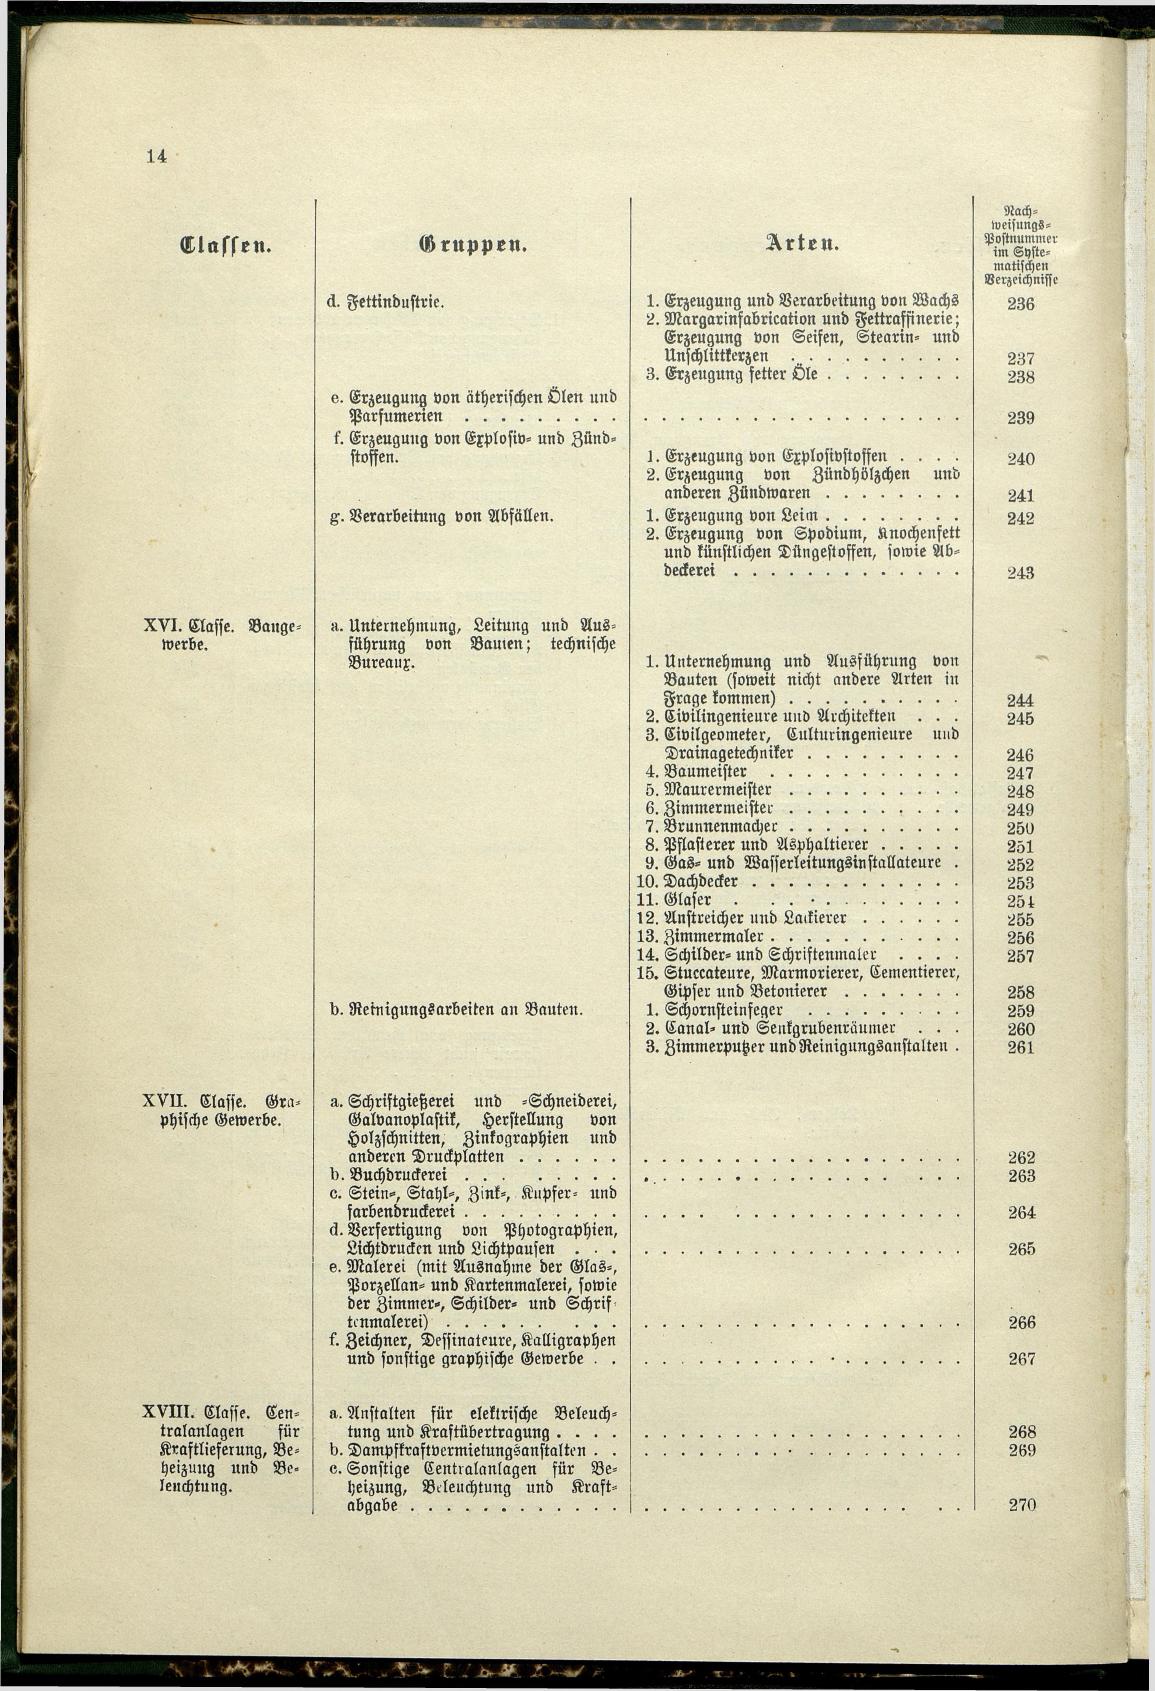 Verzeichnis der Gewerbe der im Reichsrathe vertretenen Königreiche und Länder 1900 - Seite 18